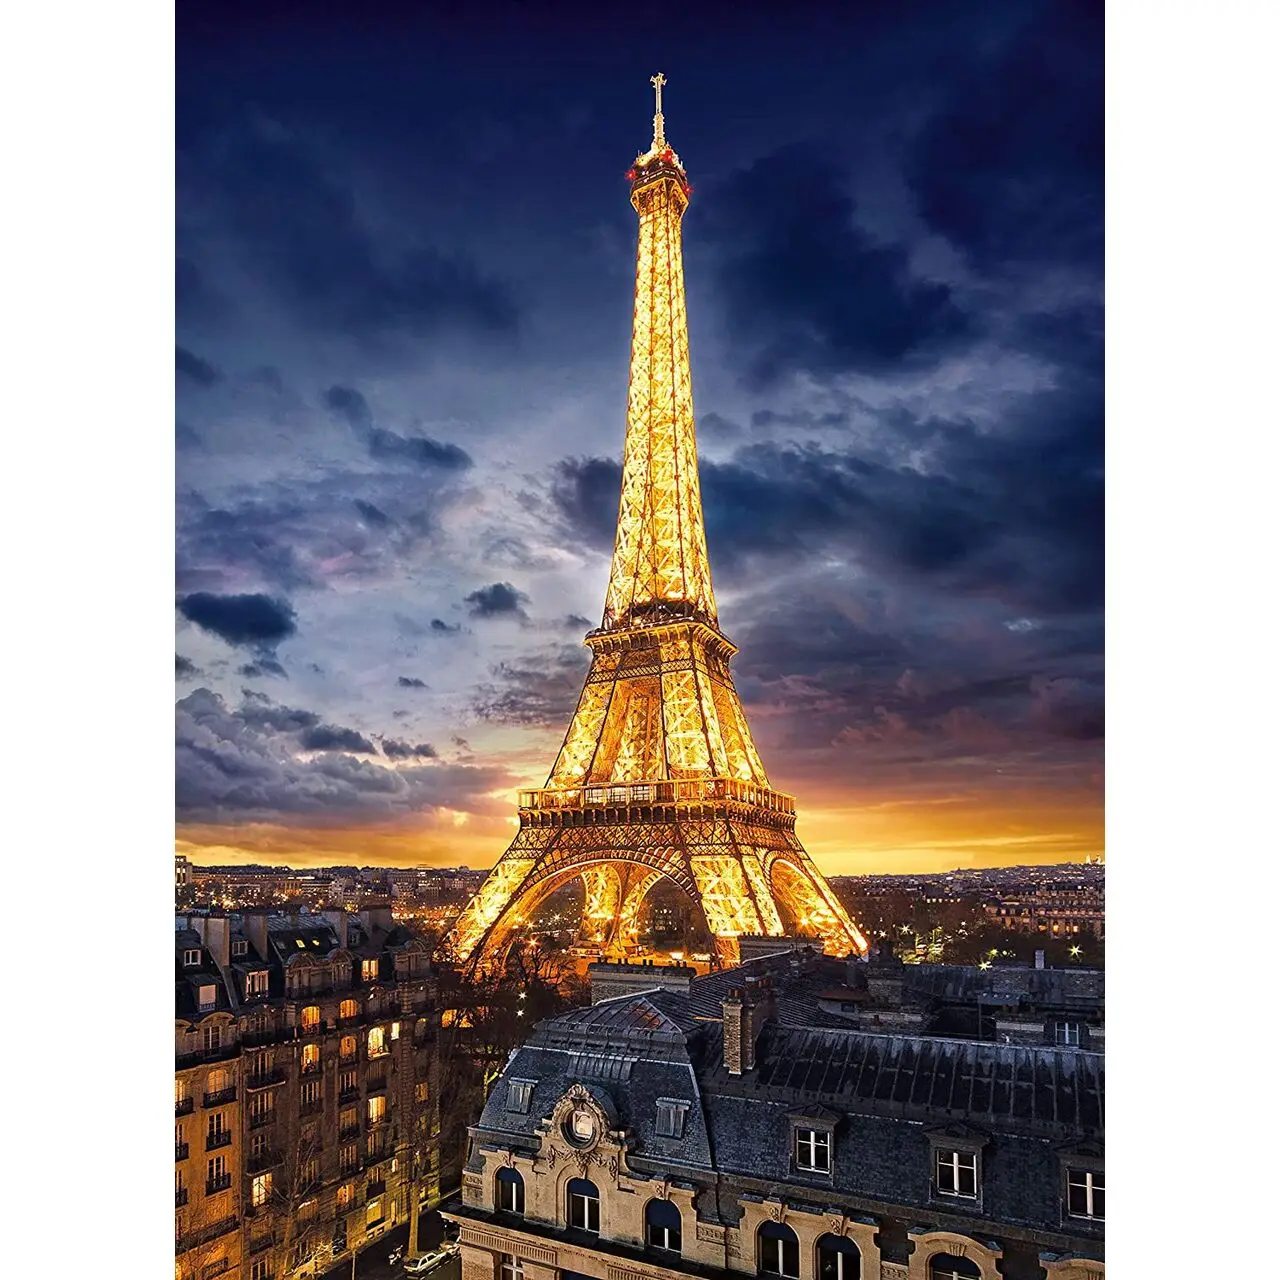 1000 Puzzle Eiffelturm Teile